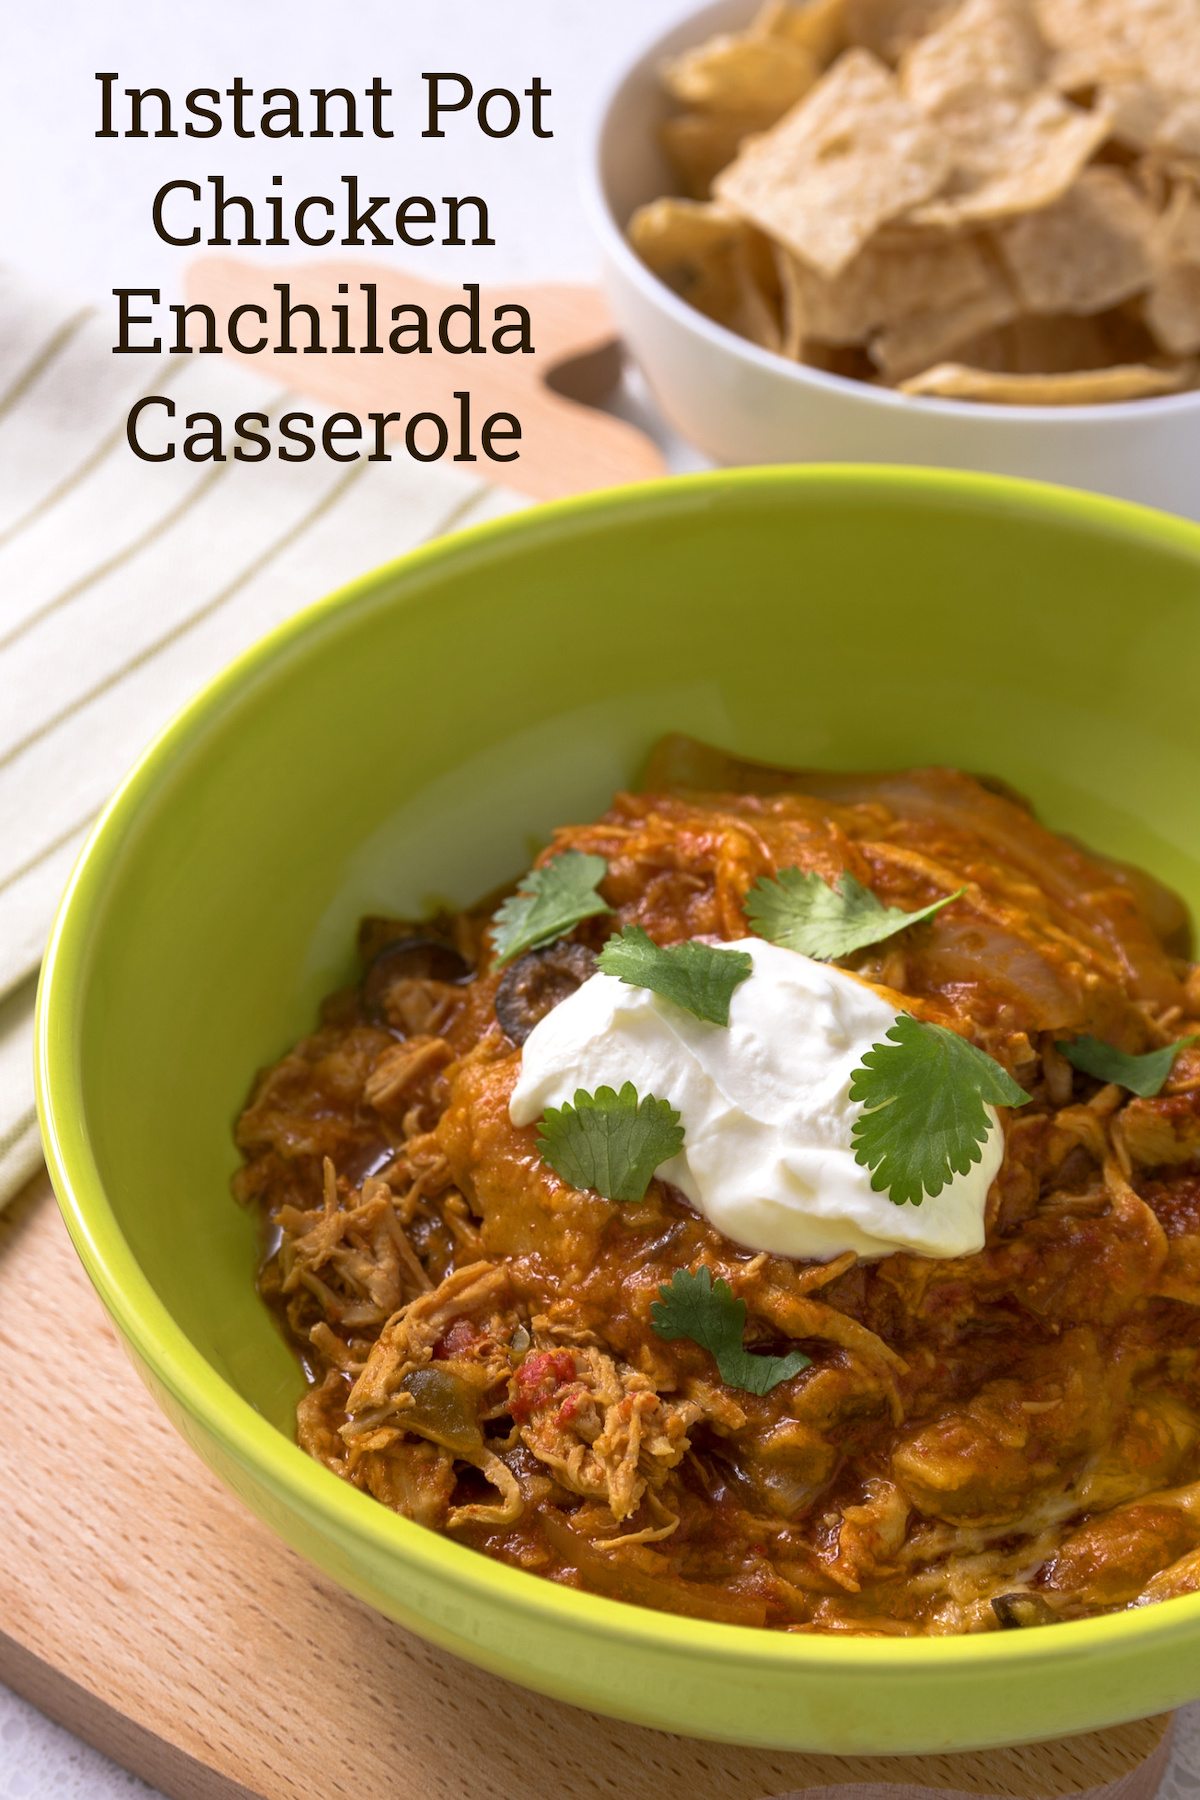 Instant Pot Chicken Enchilada Casserole